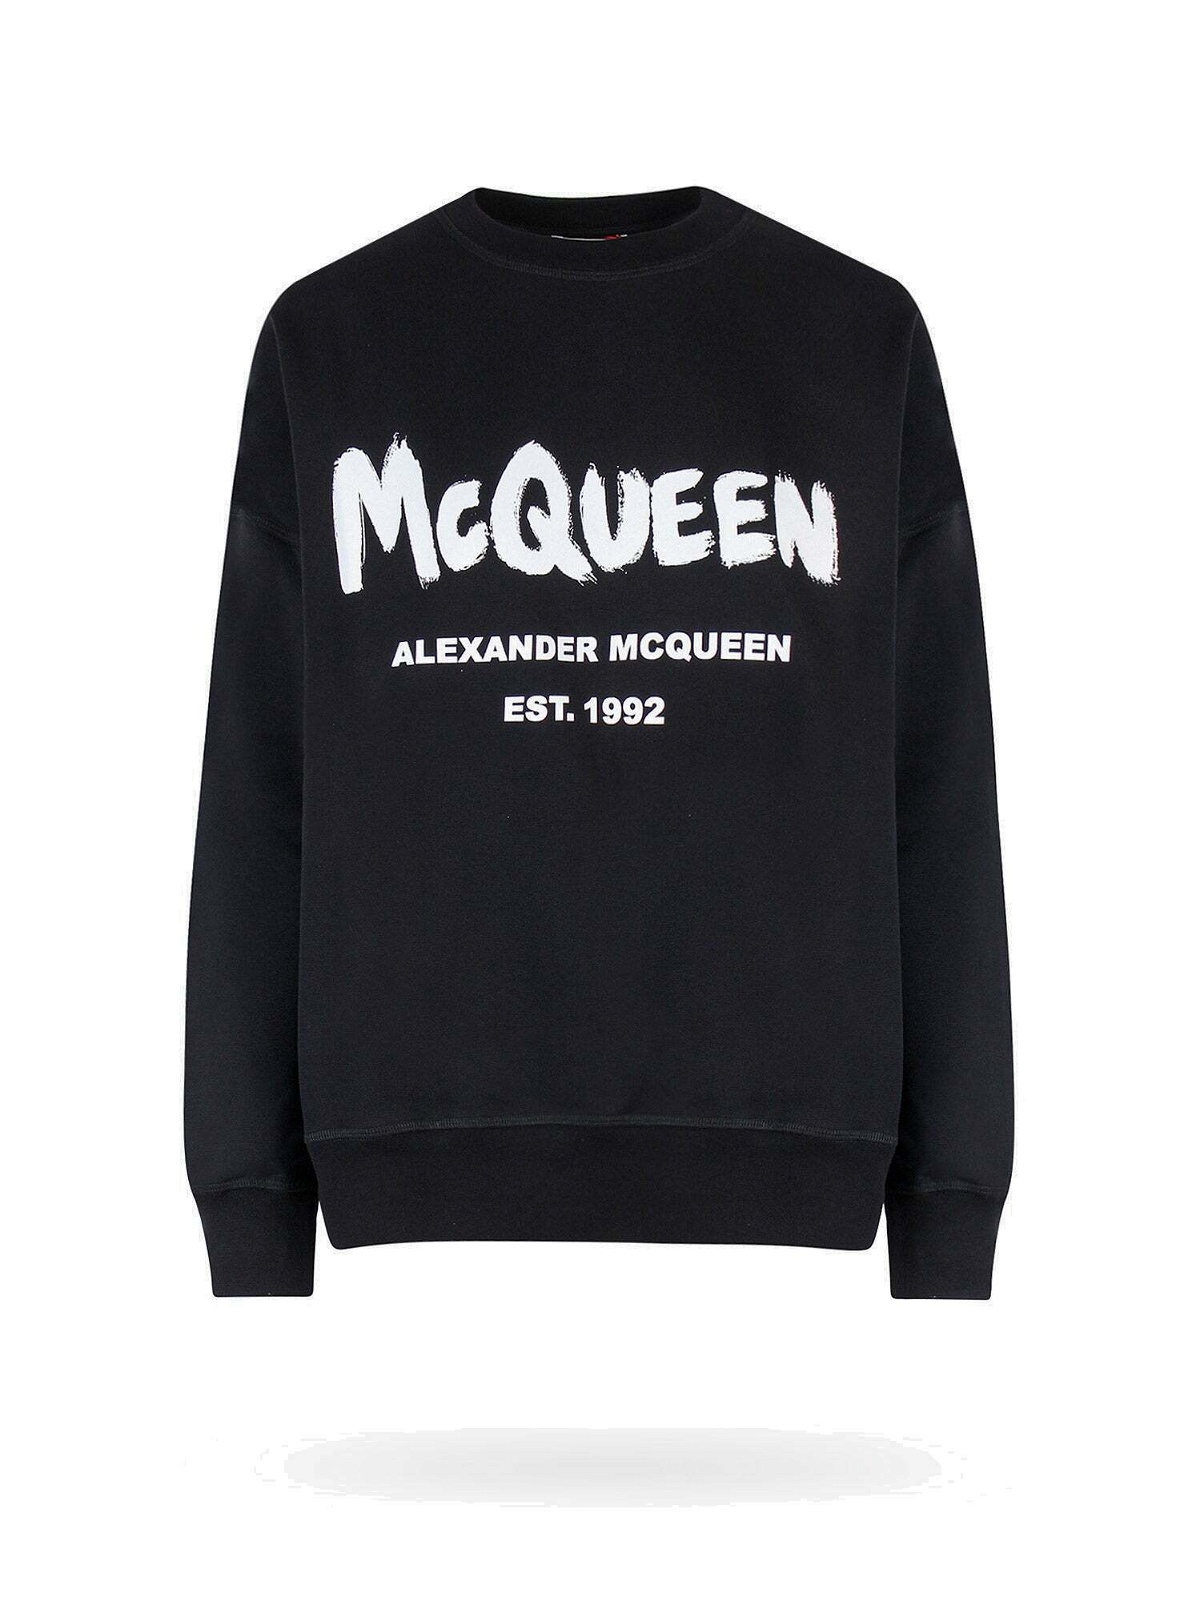 Alexander Mcqueen Sweatshirt Black Womens Alexander McQueen